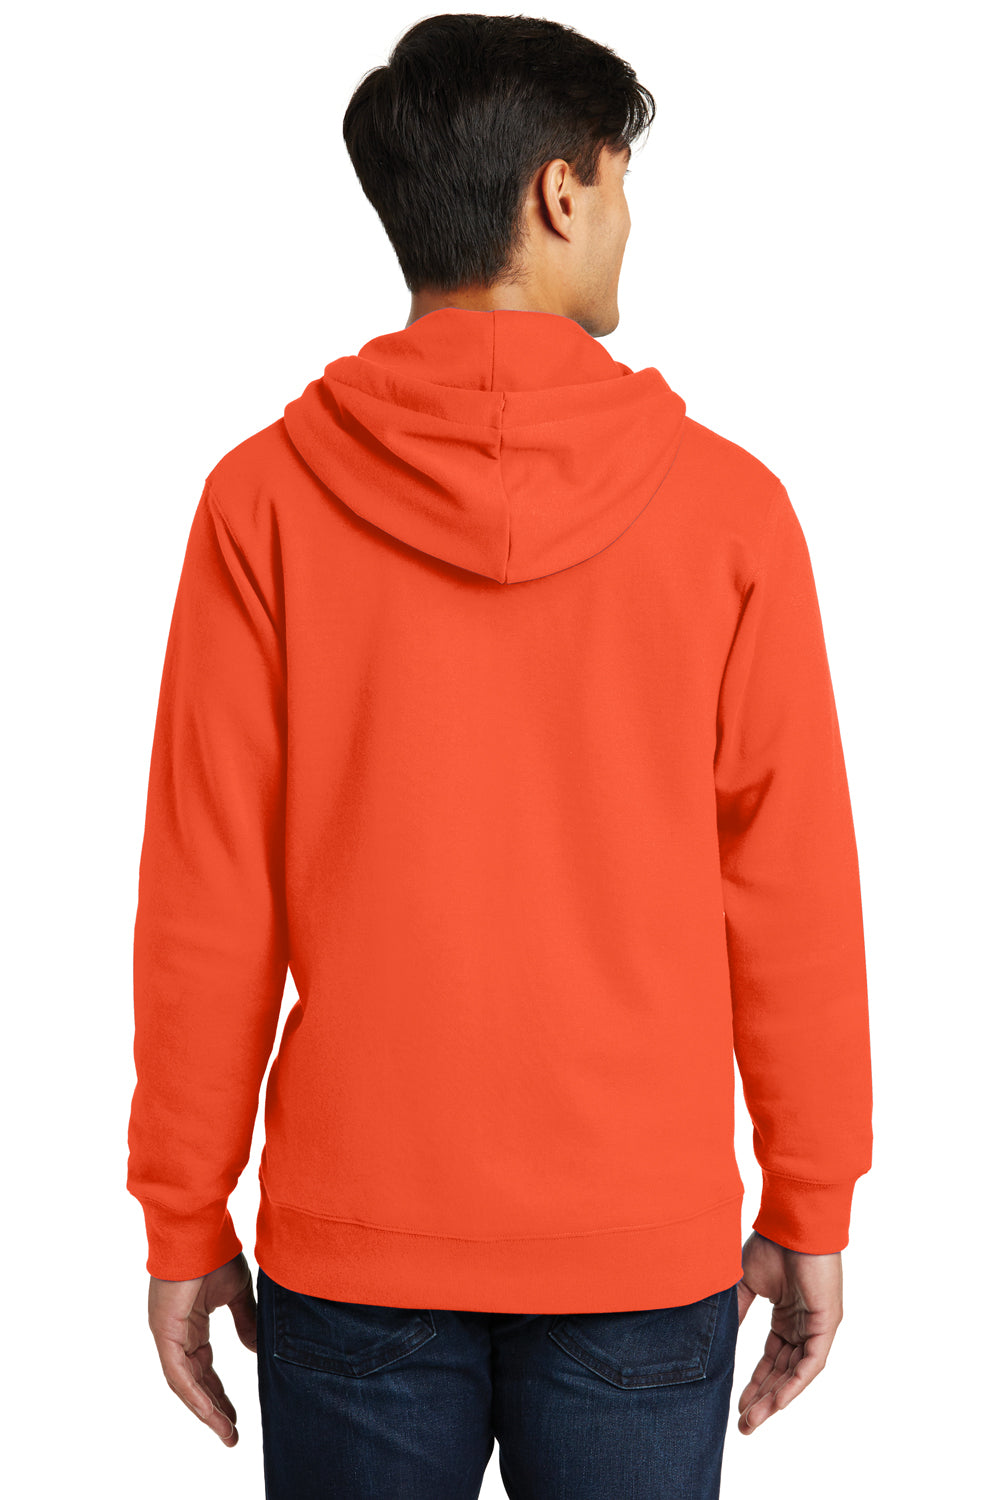 Port & Company PC850ZH Mens Fan Favorite Fleece Full Zip Hooded Sweatshirt Hoodie Orange Back